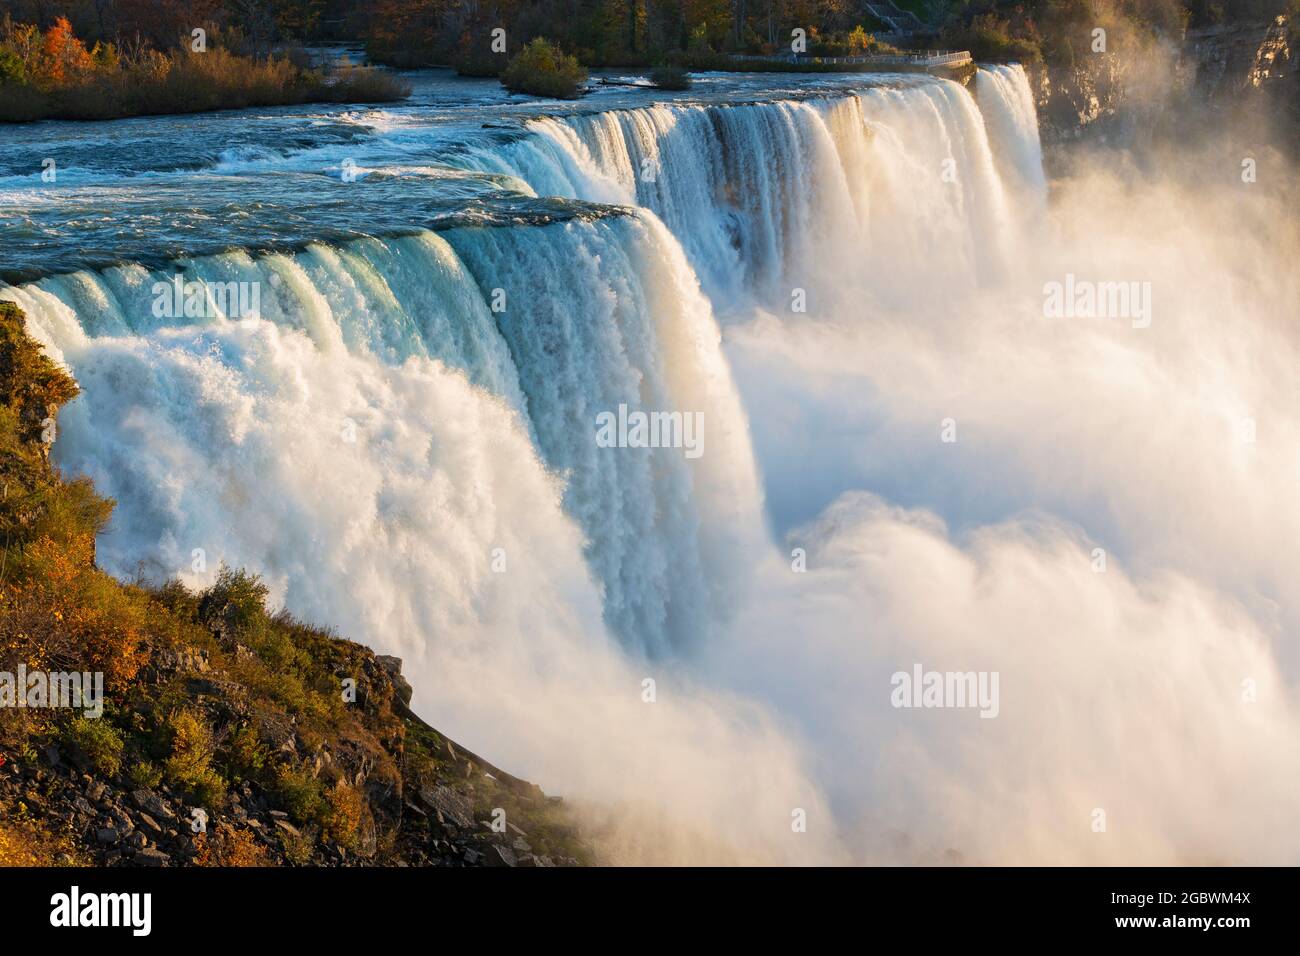 USA, New York, New York State Park, Niagara Falls, gros plan des chutes américaines montrant le grand volume d'eau en cascade sur le bord du gouffre Banque D'Images